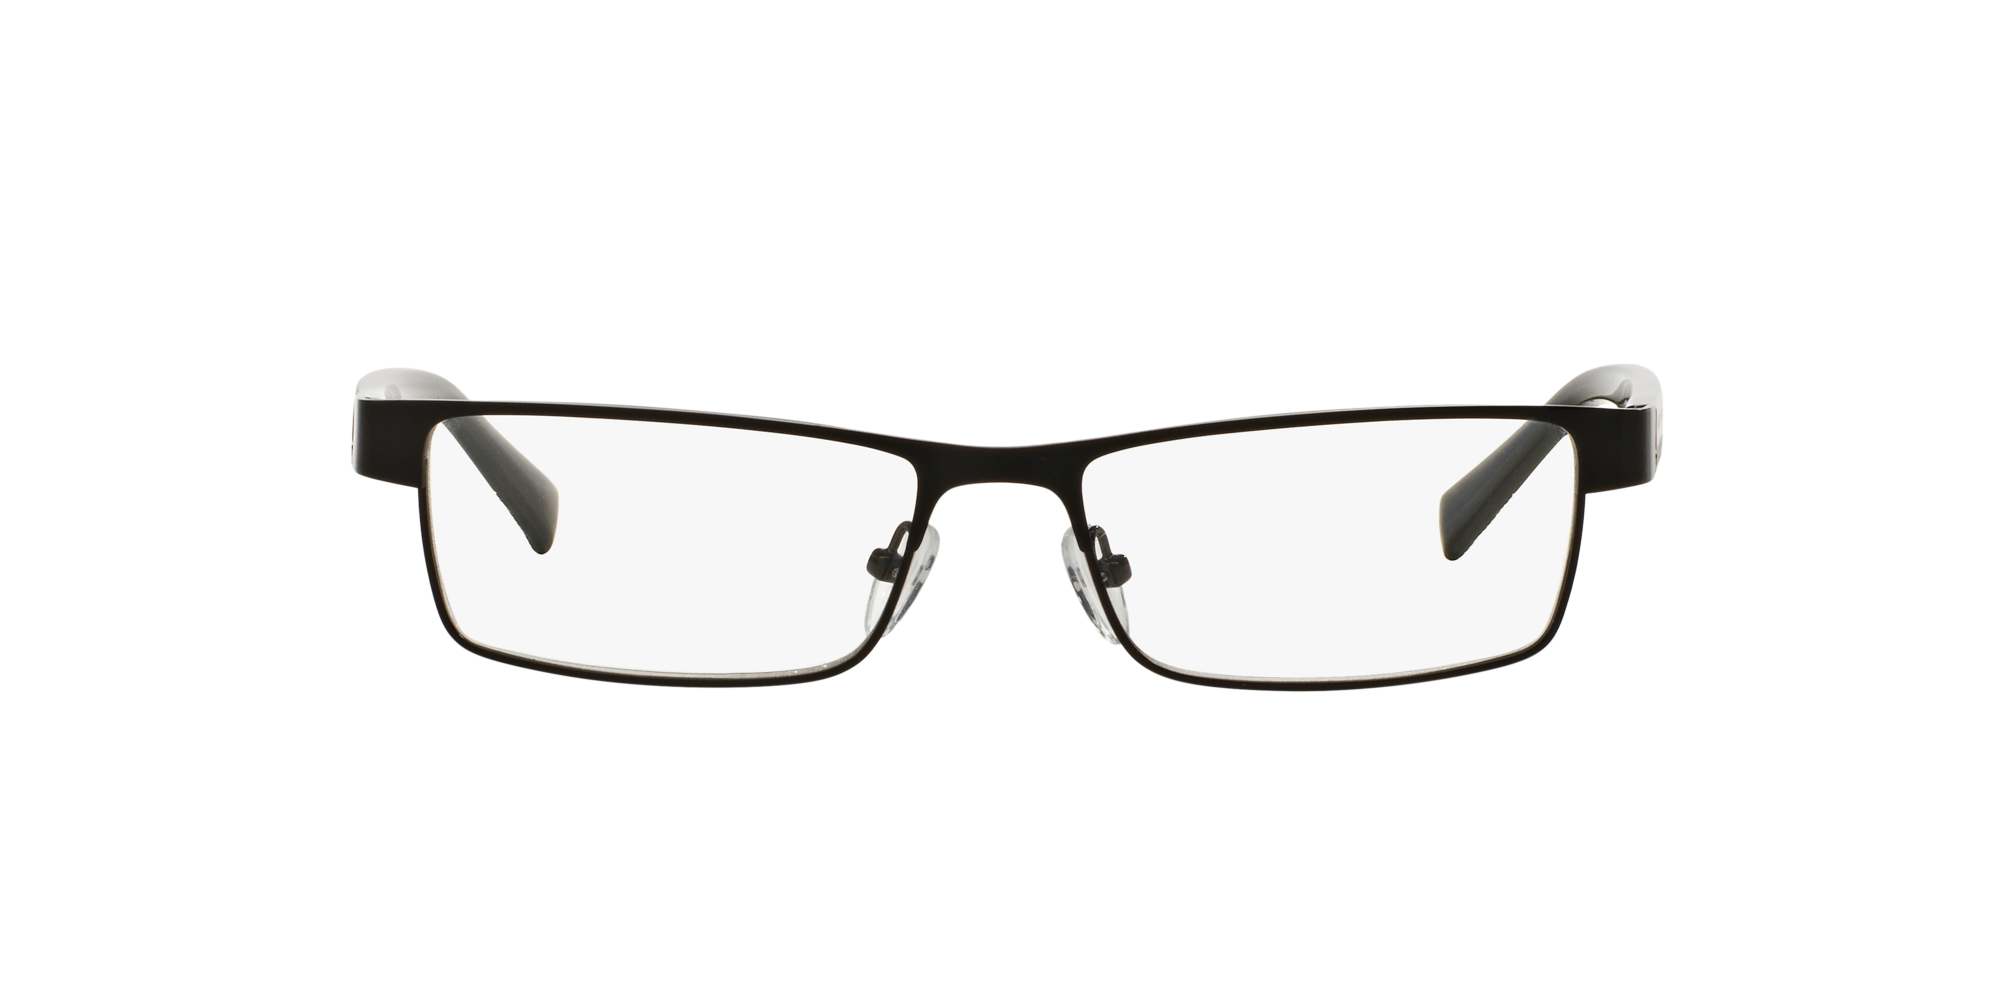 armani clip on glasses